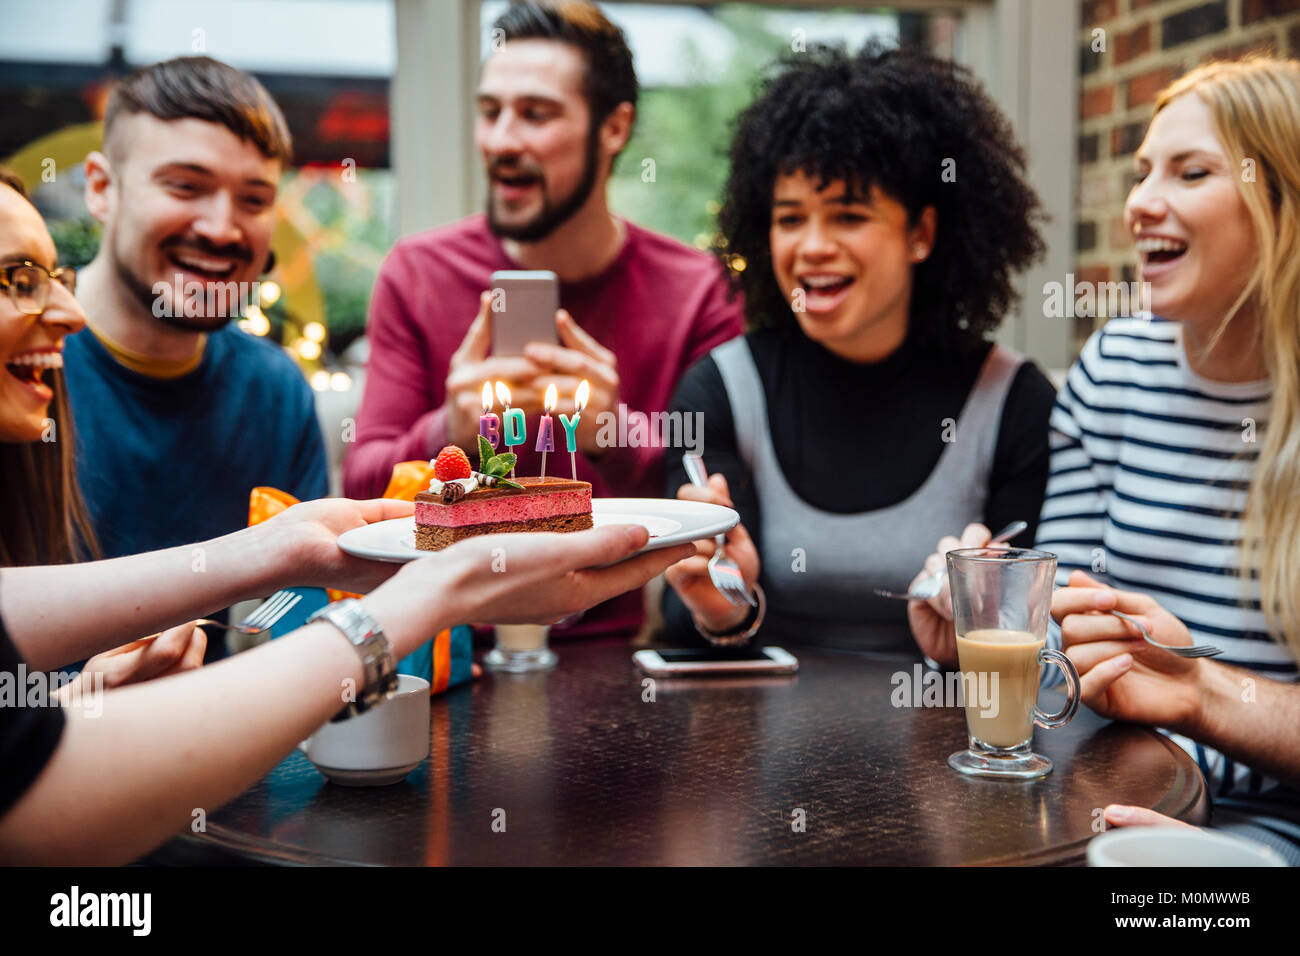 Sind eine Gruppe von Freunden in einer Bar feiern auf der Frauen Geburtstage. Ist jemand heraus halten, ein Dessert mit Kerzen, die Zauber 'Geburtstag'. Stockfoto